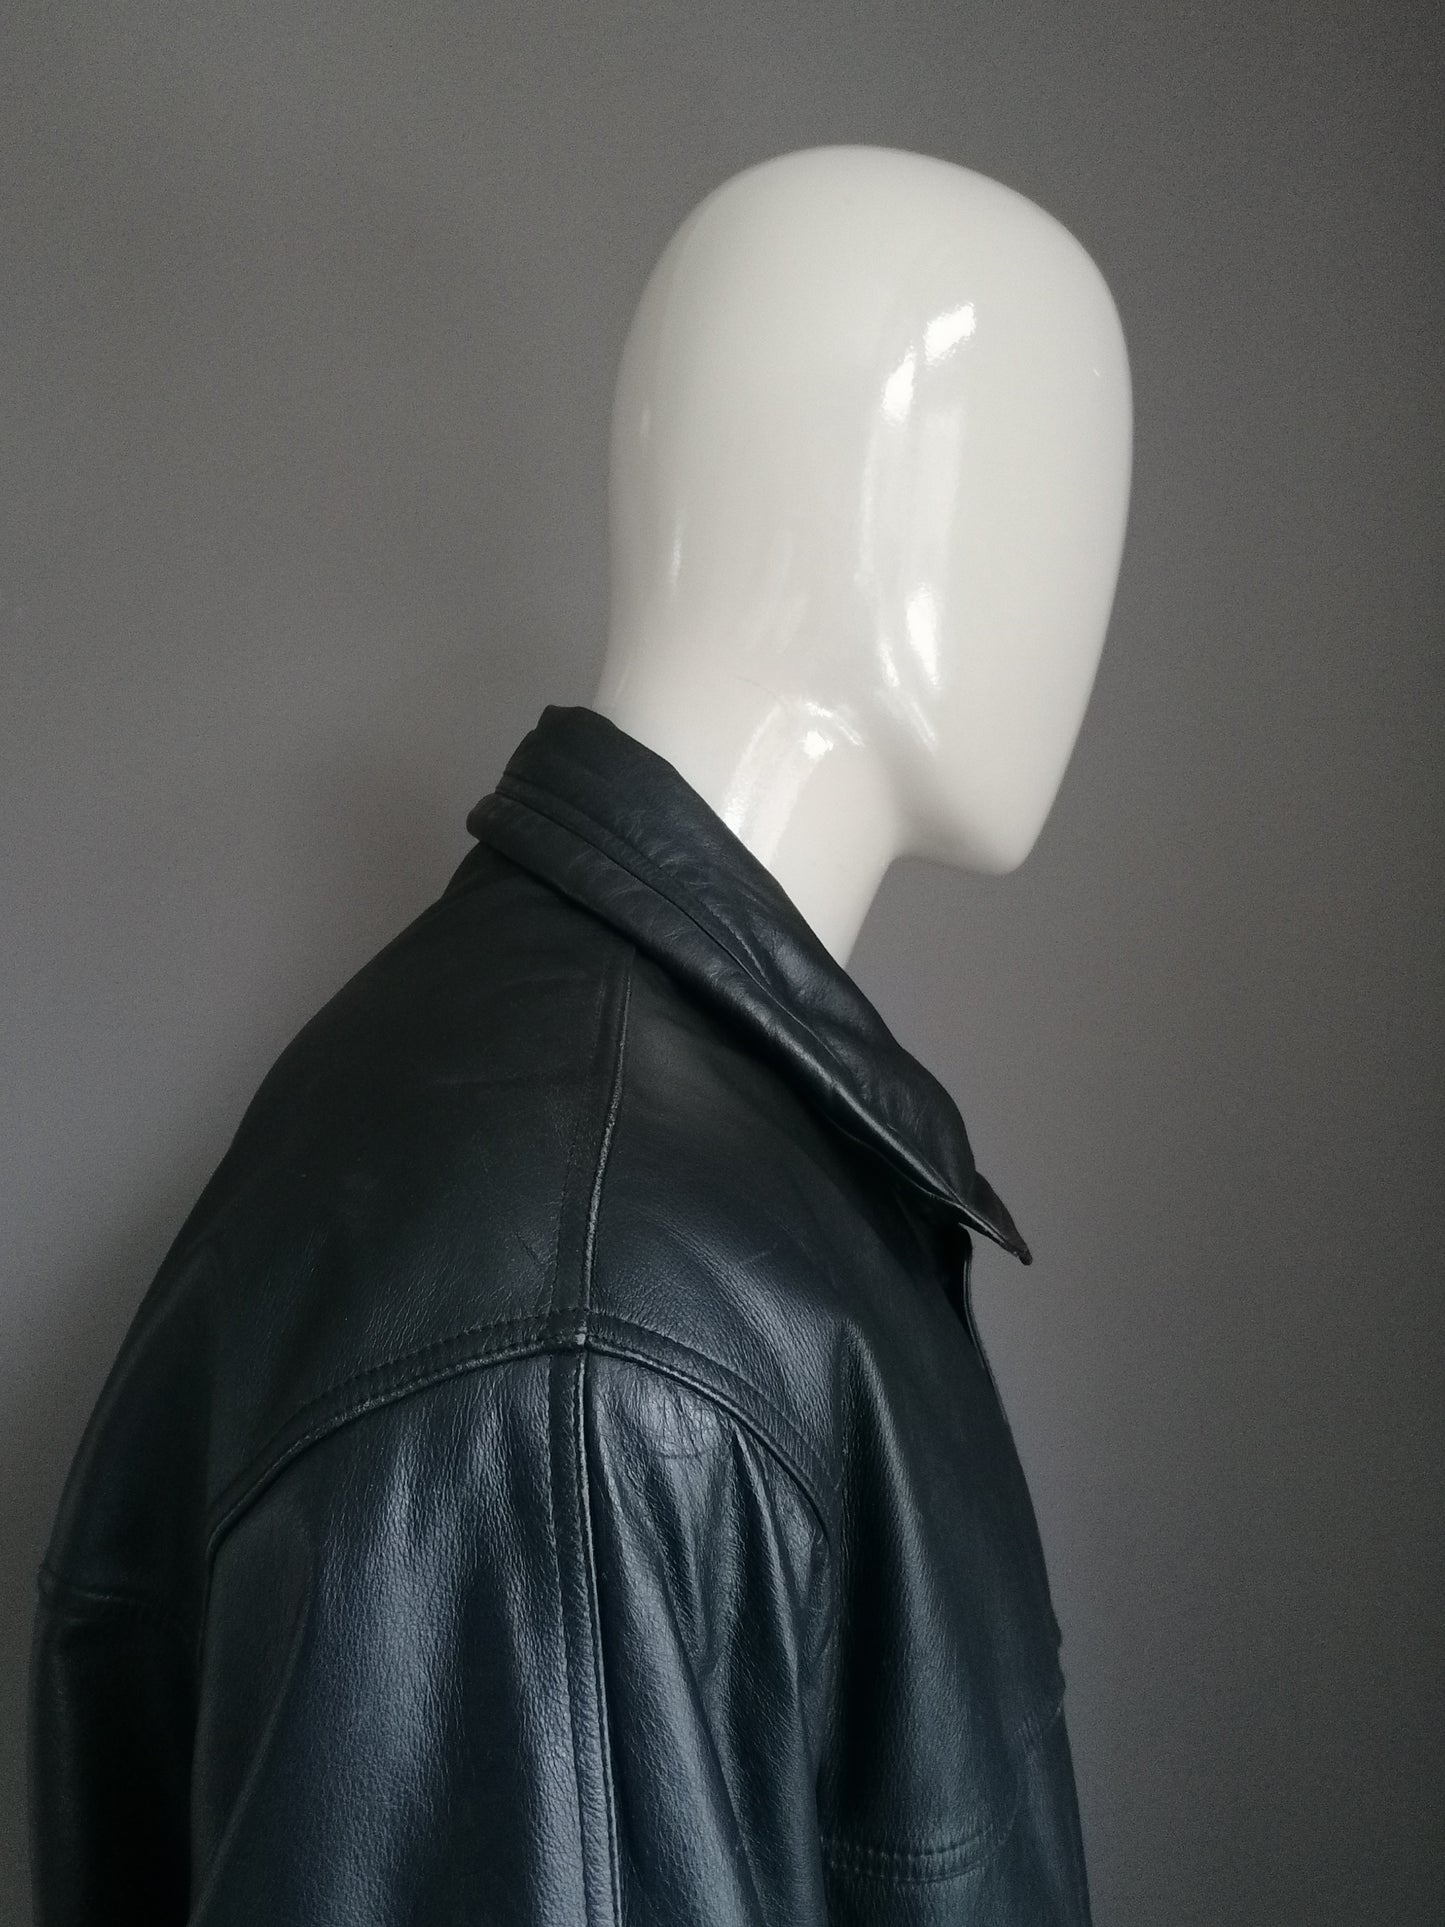 Vintage Leren jack. Gevoerd met dubbele sluiting en zakken. Zwart gekleurd. Maat 56 / XL.